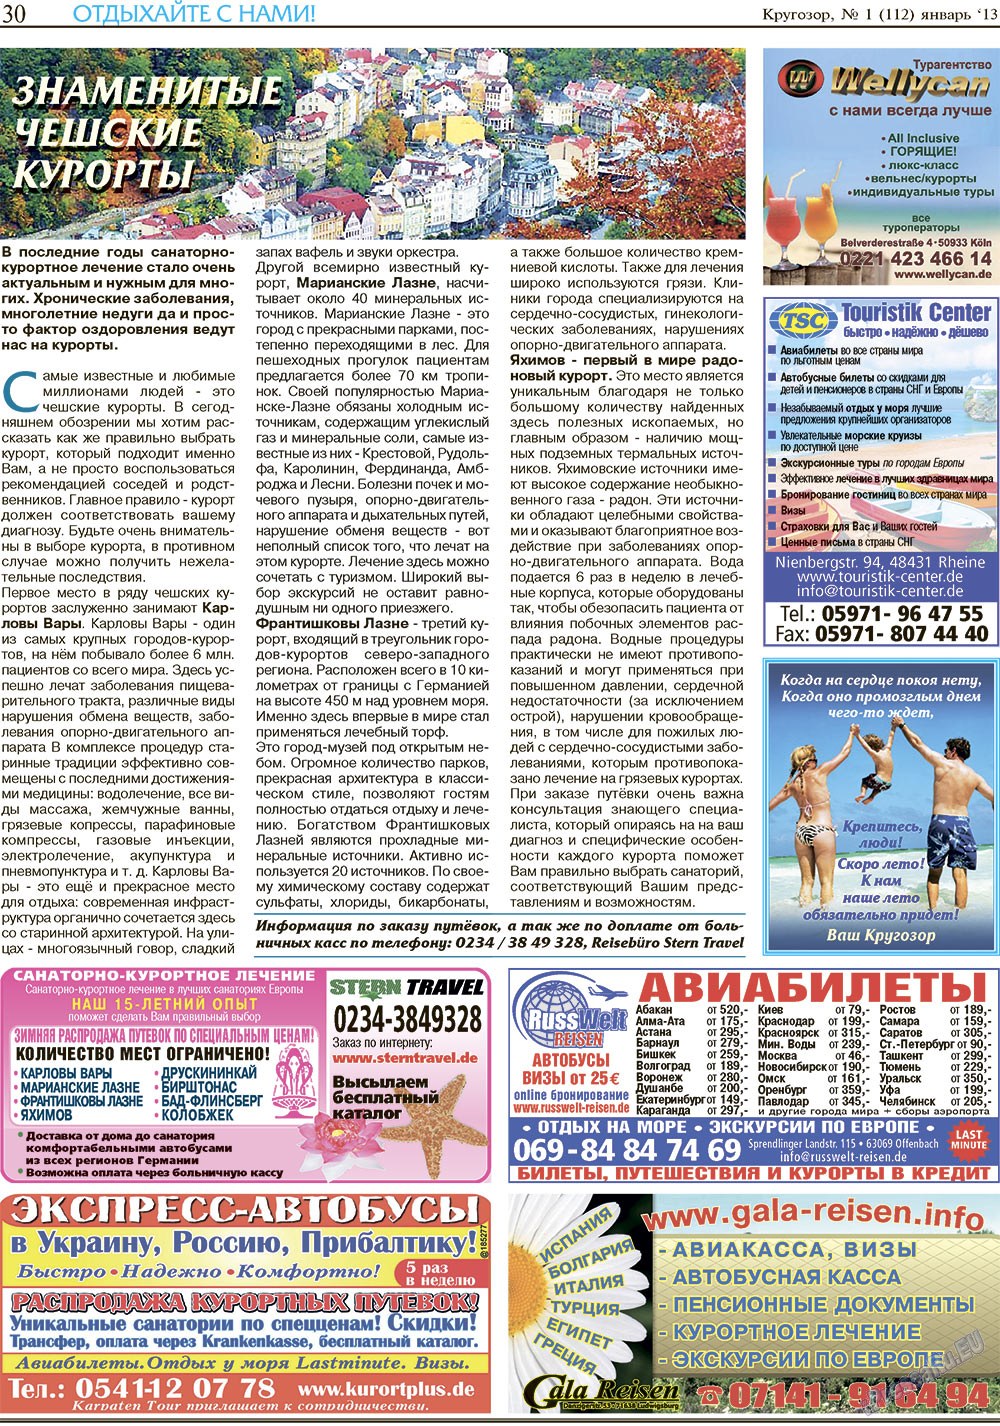 Кругозор (газета). 2013 год, номер 1, стр. 30